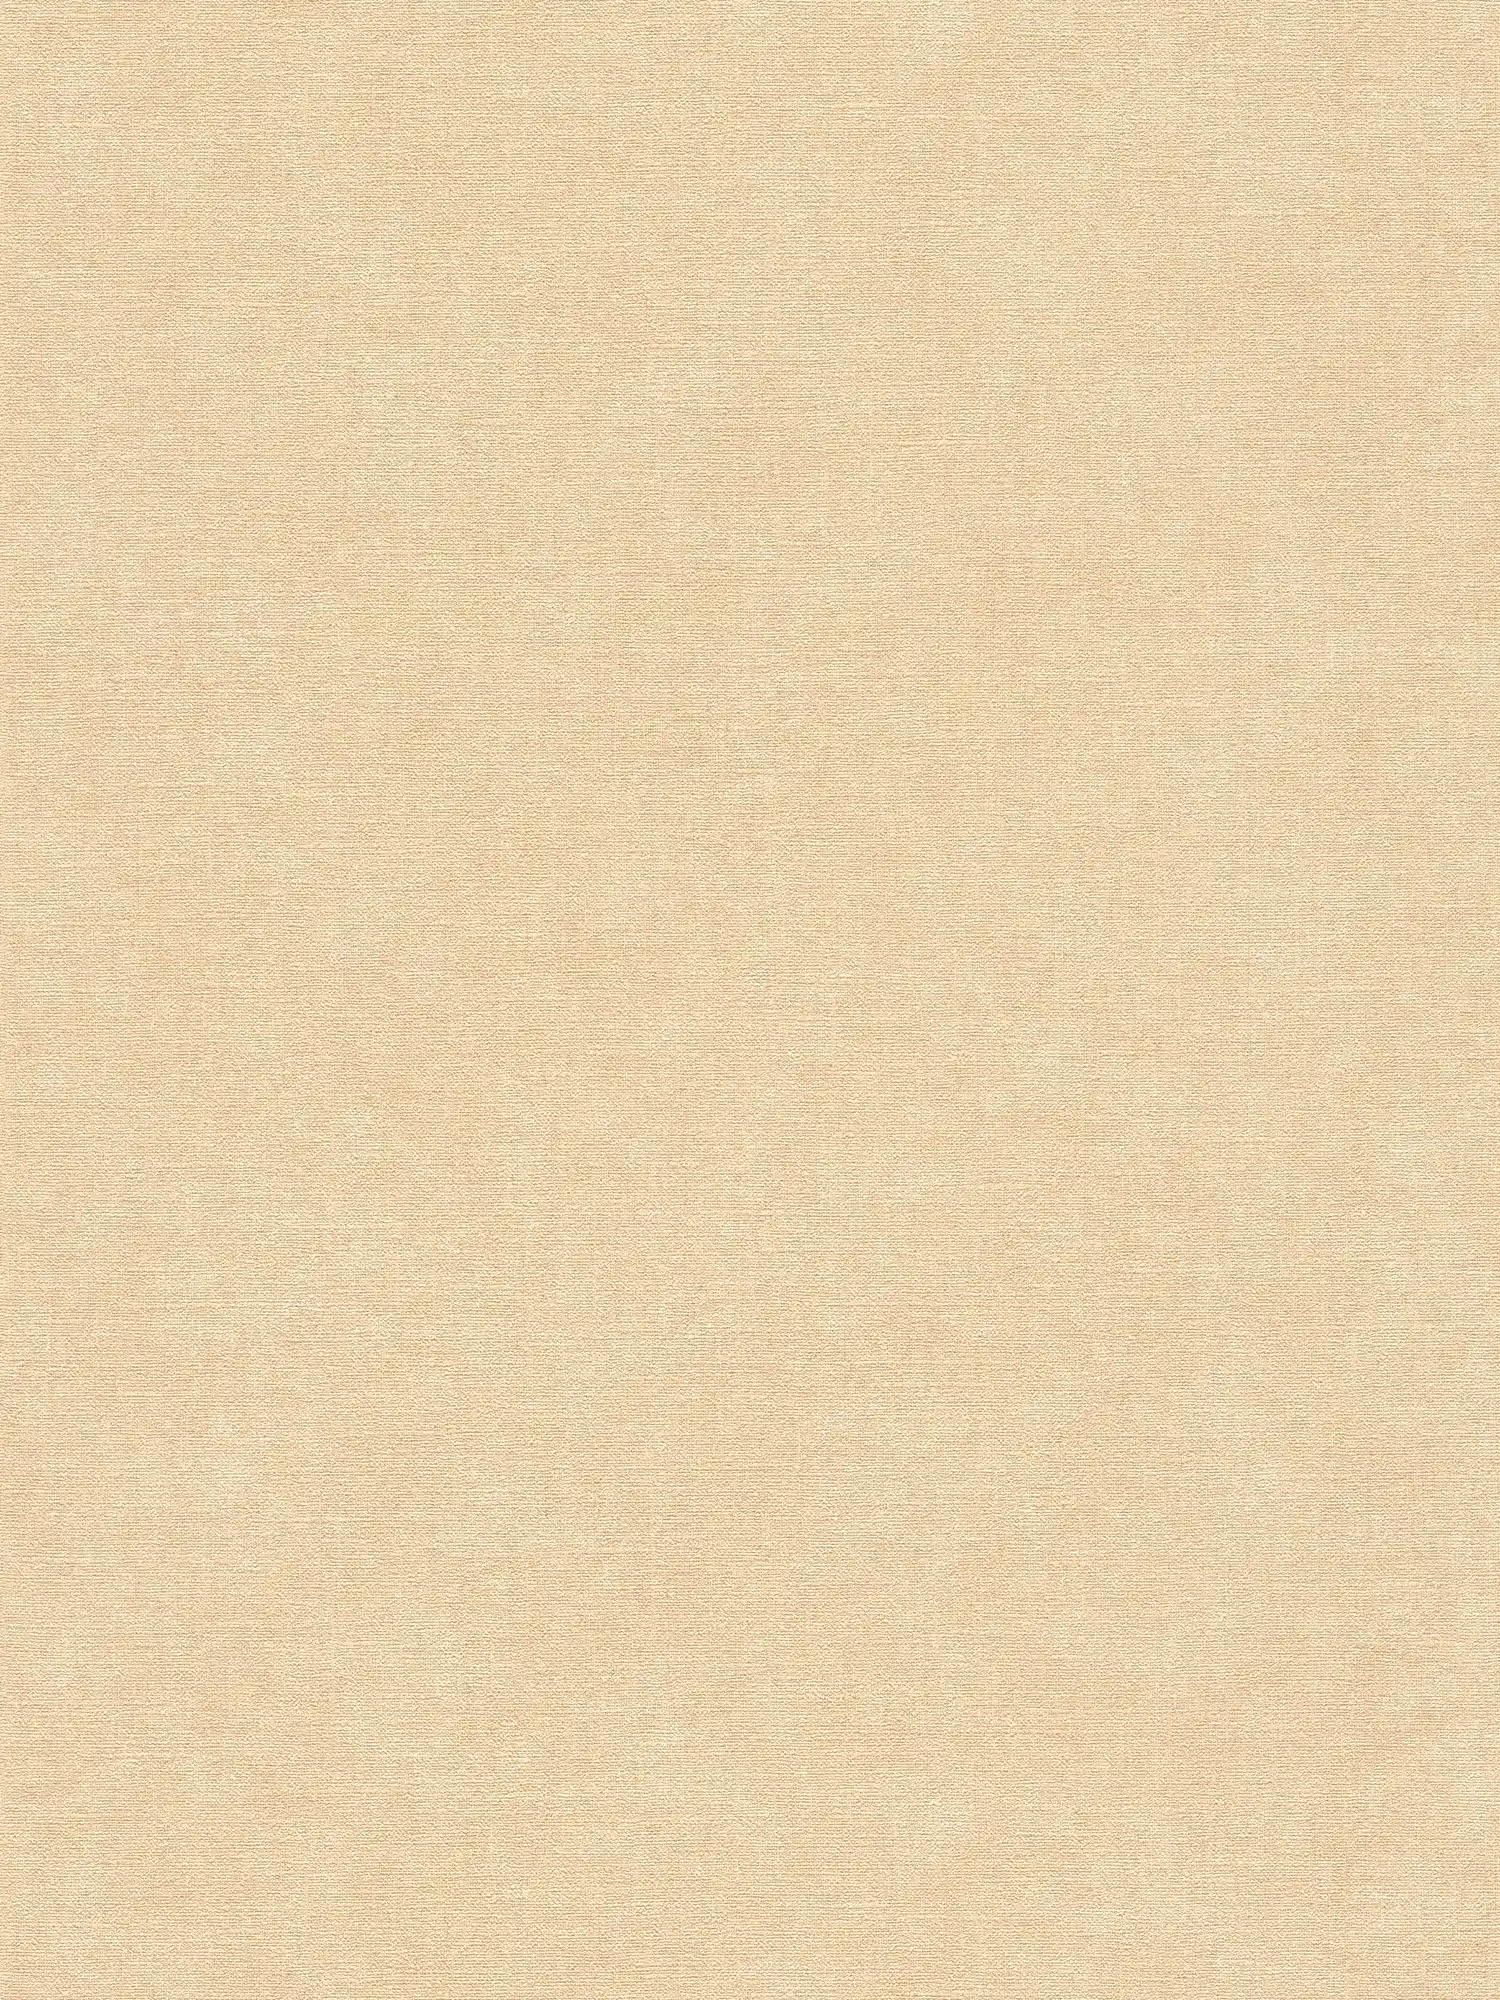 Carta da parati monocolore in tessuto non tessuto in look tessile - beige, marrone
